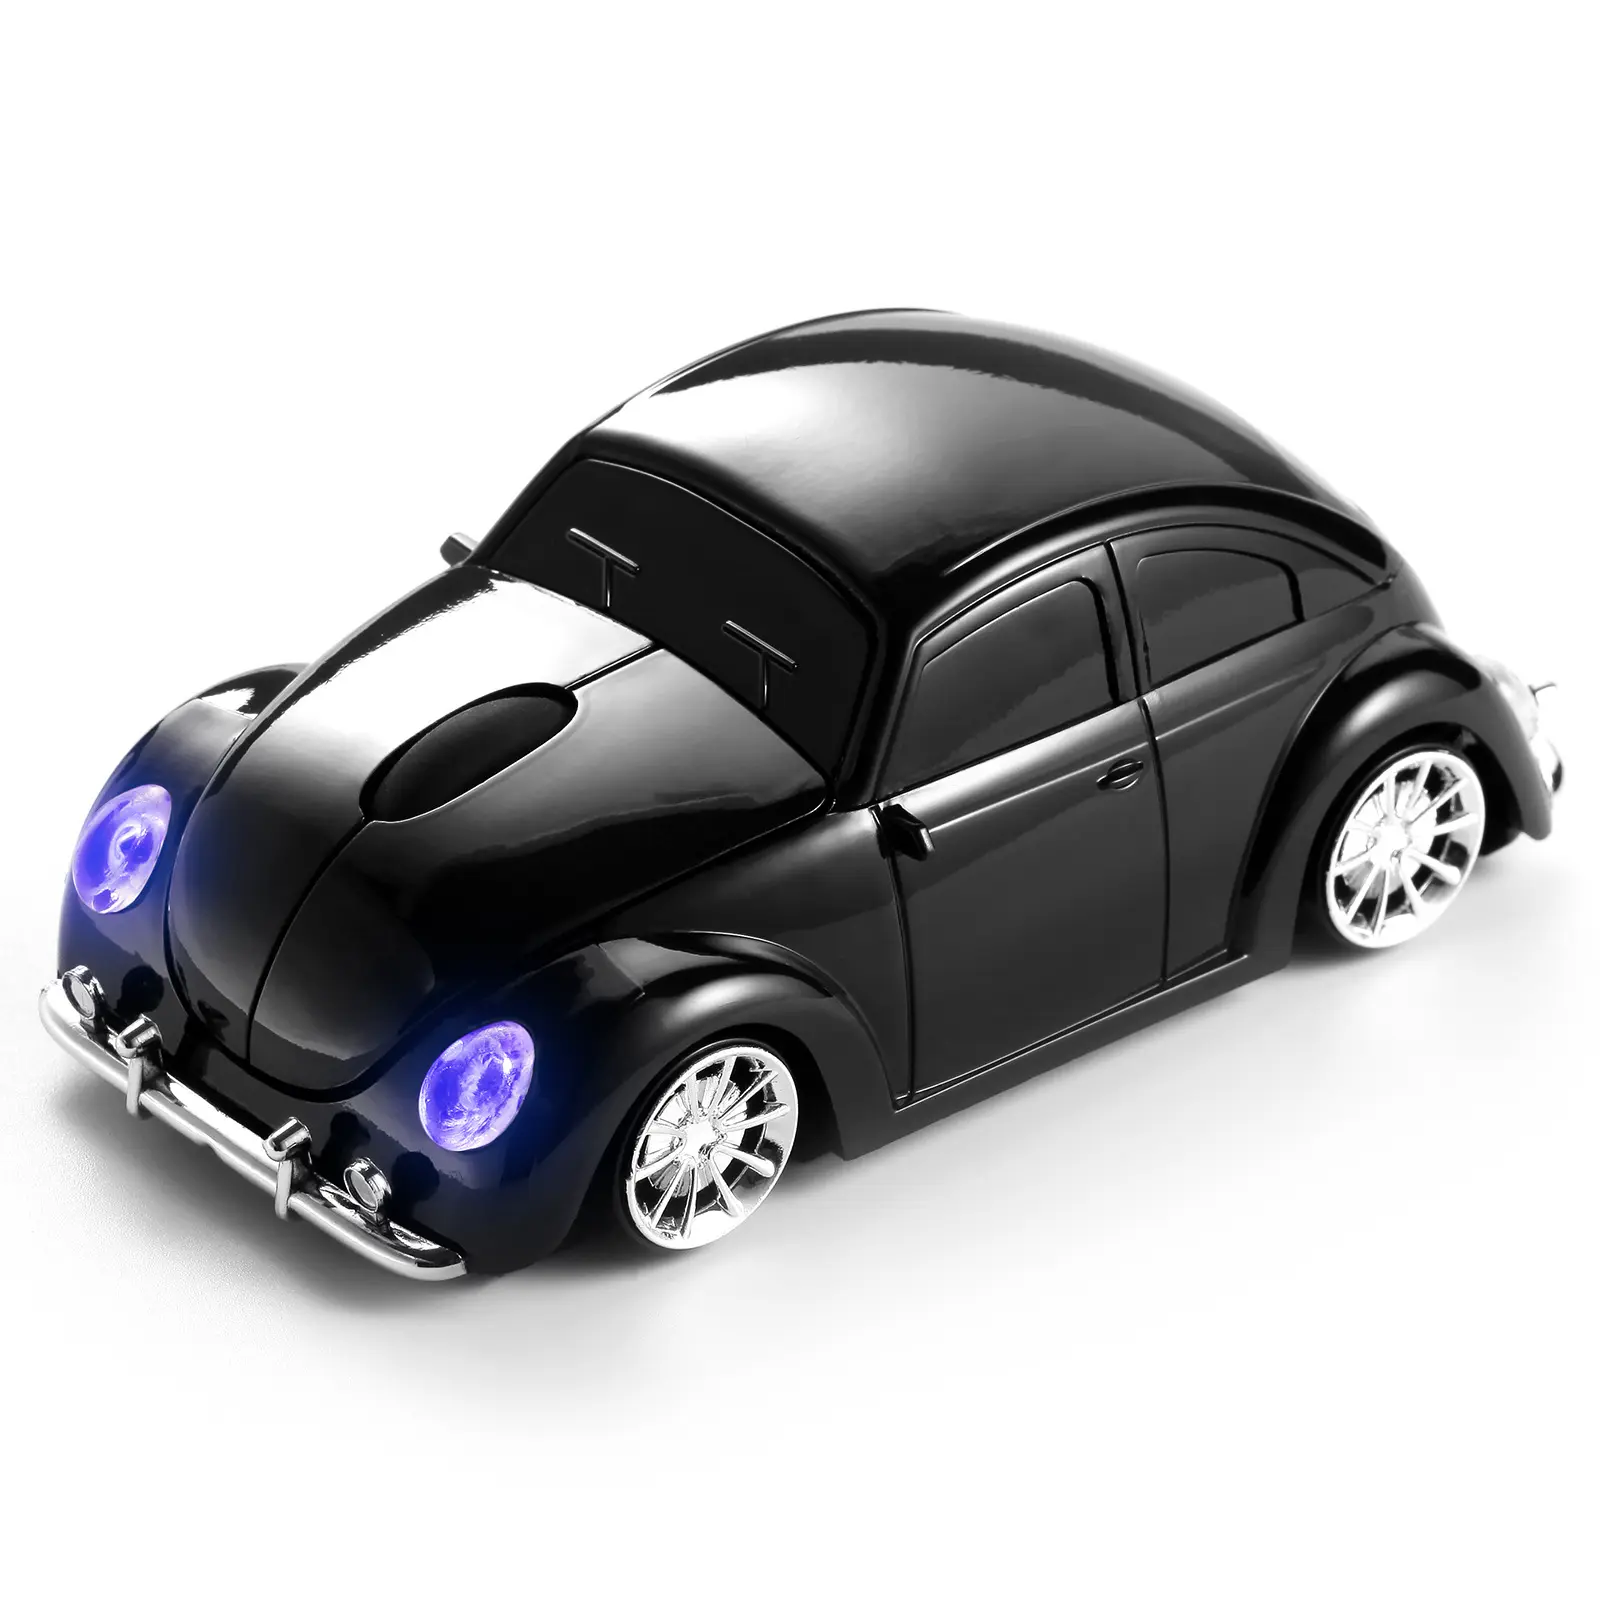 車の形をしたマウスUSB光学式ワイヤレスマウス1600DPIミニ3DコンピューターゲーミングマウスPCラップトップタブレットノートブックギフト用